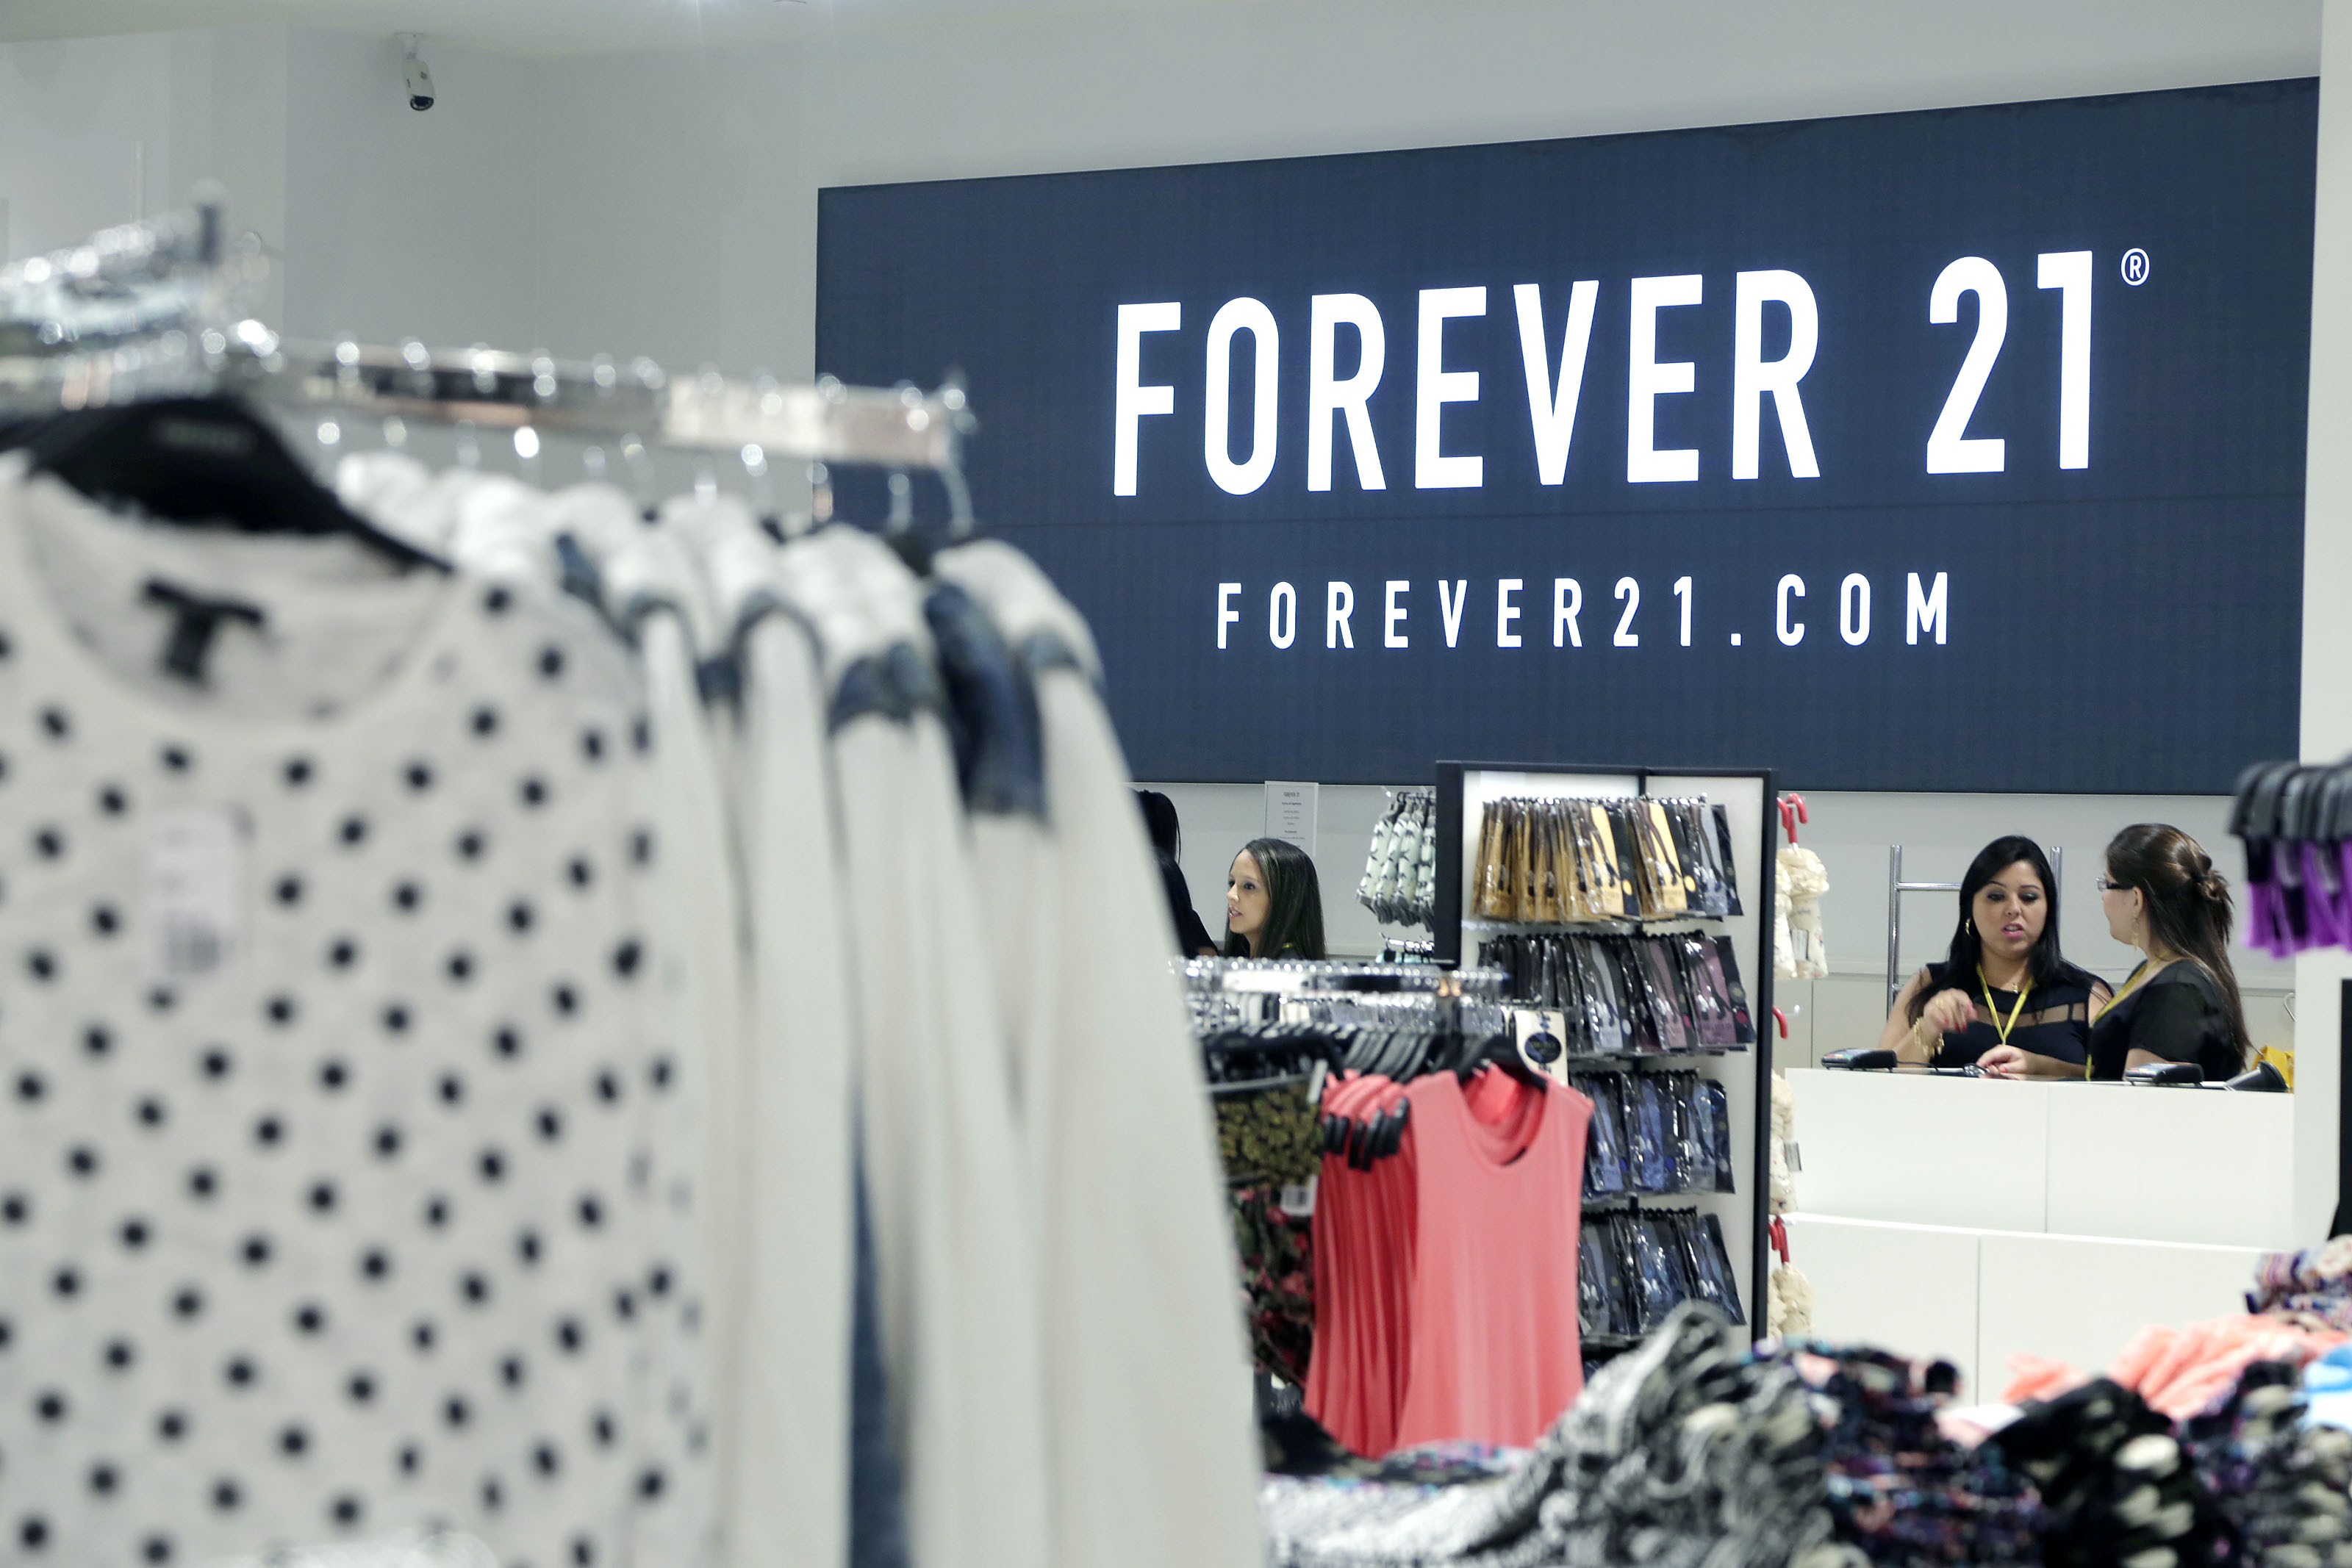 http://ffw.com.br/app/uploads/noticias/2014/12/forever-21-inaugura-mais-tres-lojas-no-brasil.jpg